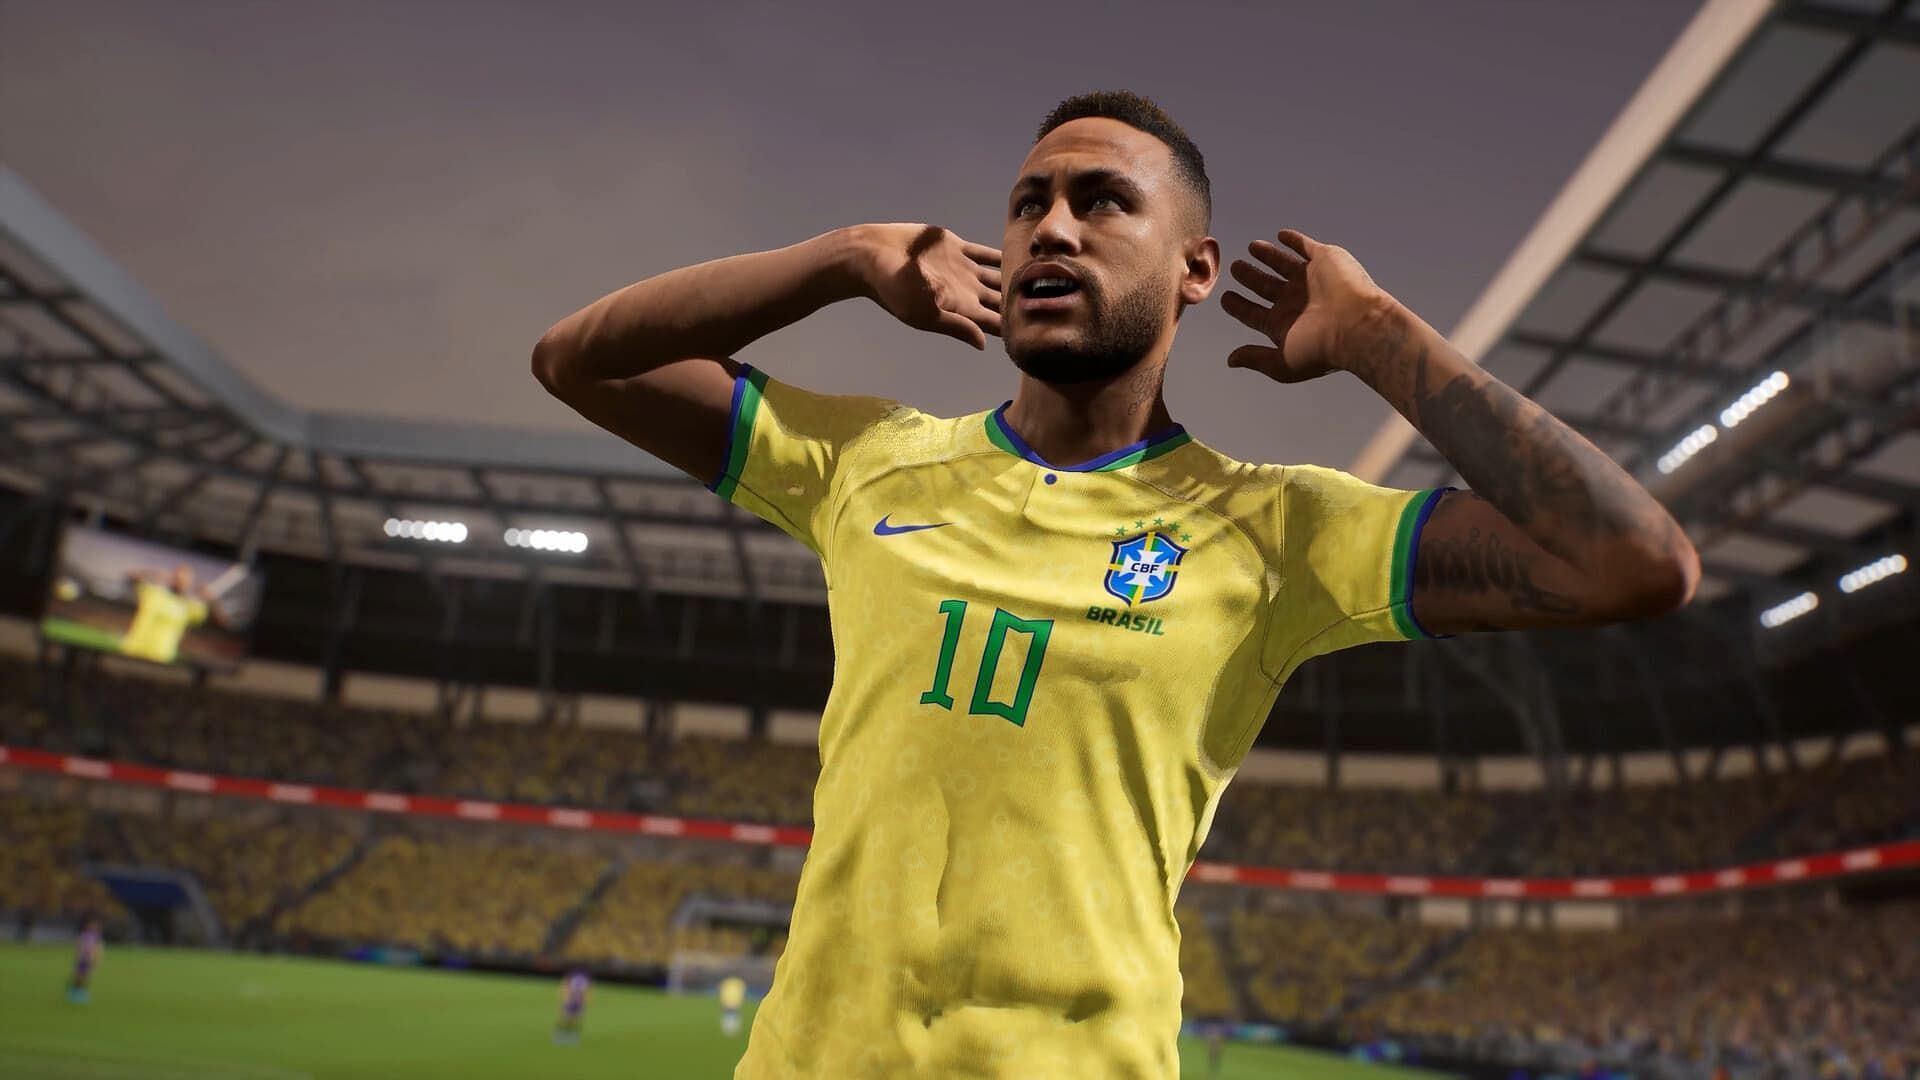 Neymar Jr. in the game (Image via Konami)